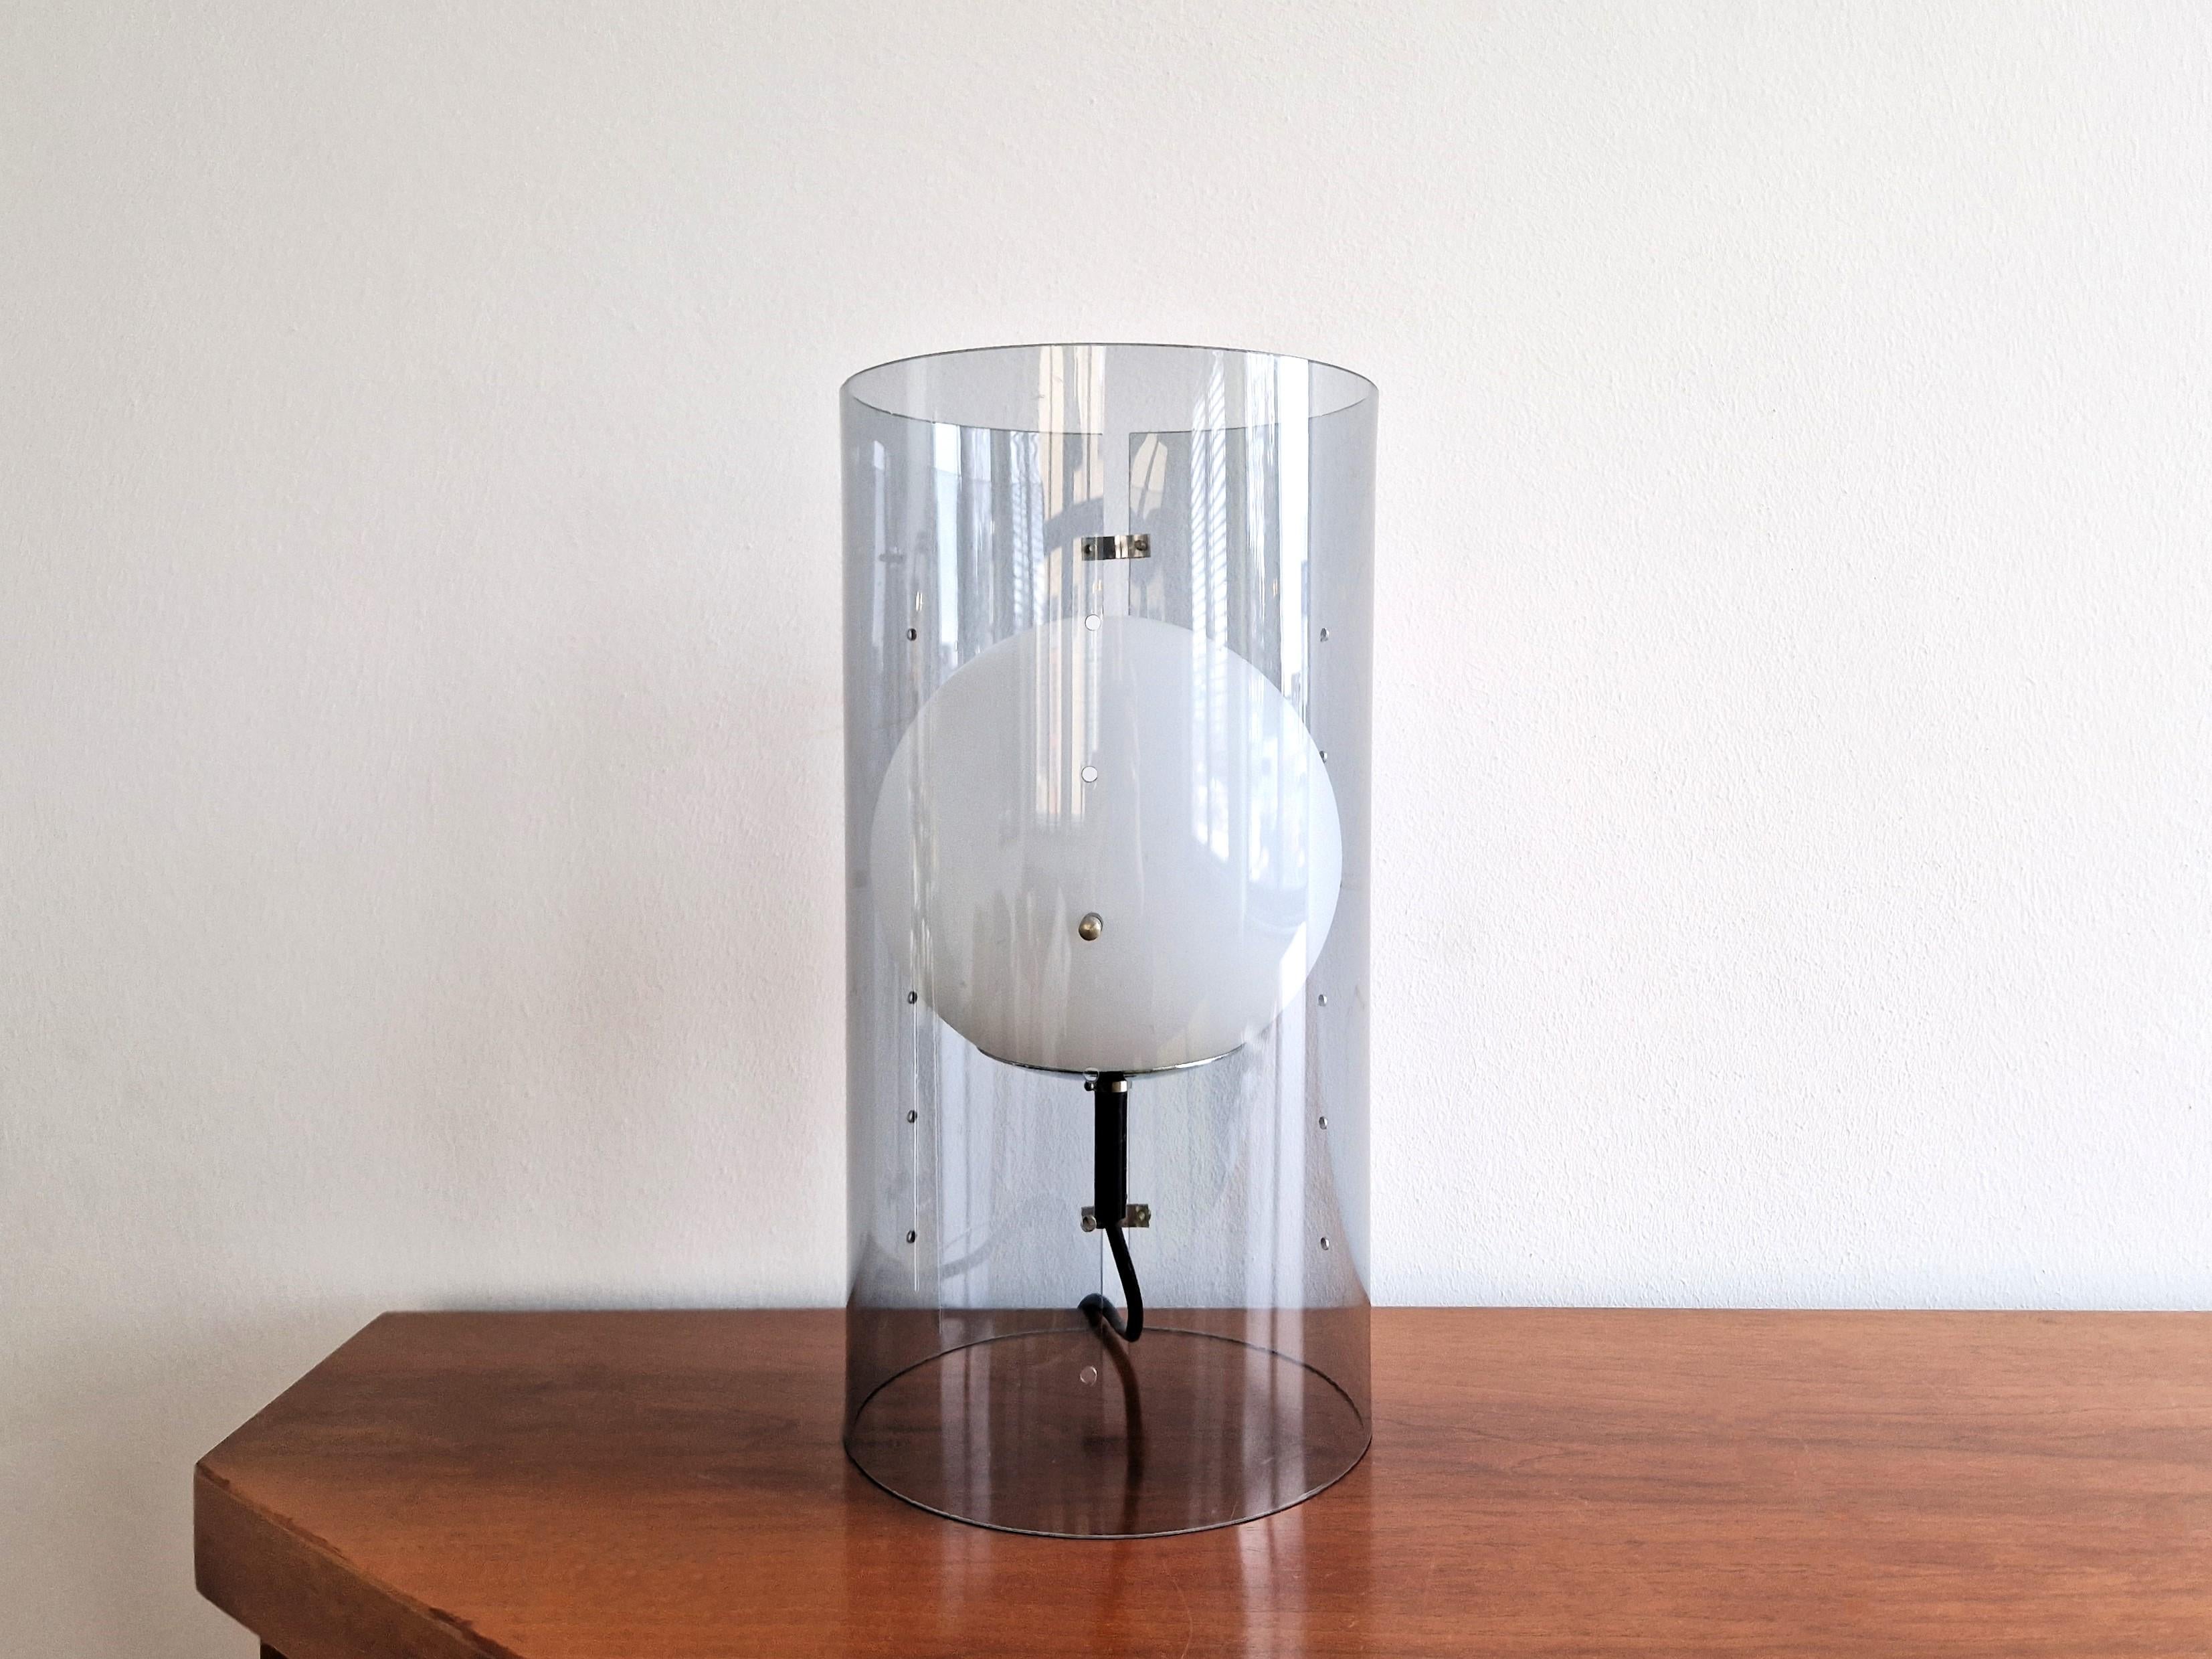 Cette charmante et rare lampe de table a été conçue pour RAAK/One dans les années 1960. Elle se compose d'un tube cylindrique en acrylique gris clair avec un globe en verre opalin à l'intérieur. Le globe est réglable en hauteur en remplaçant les